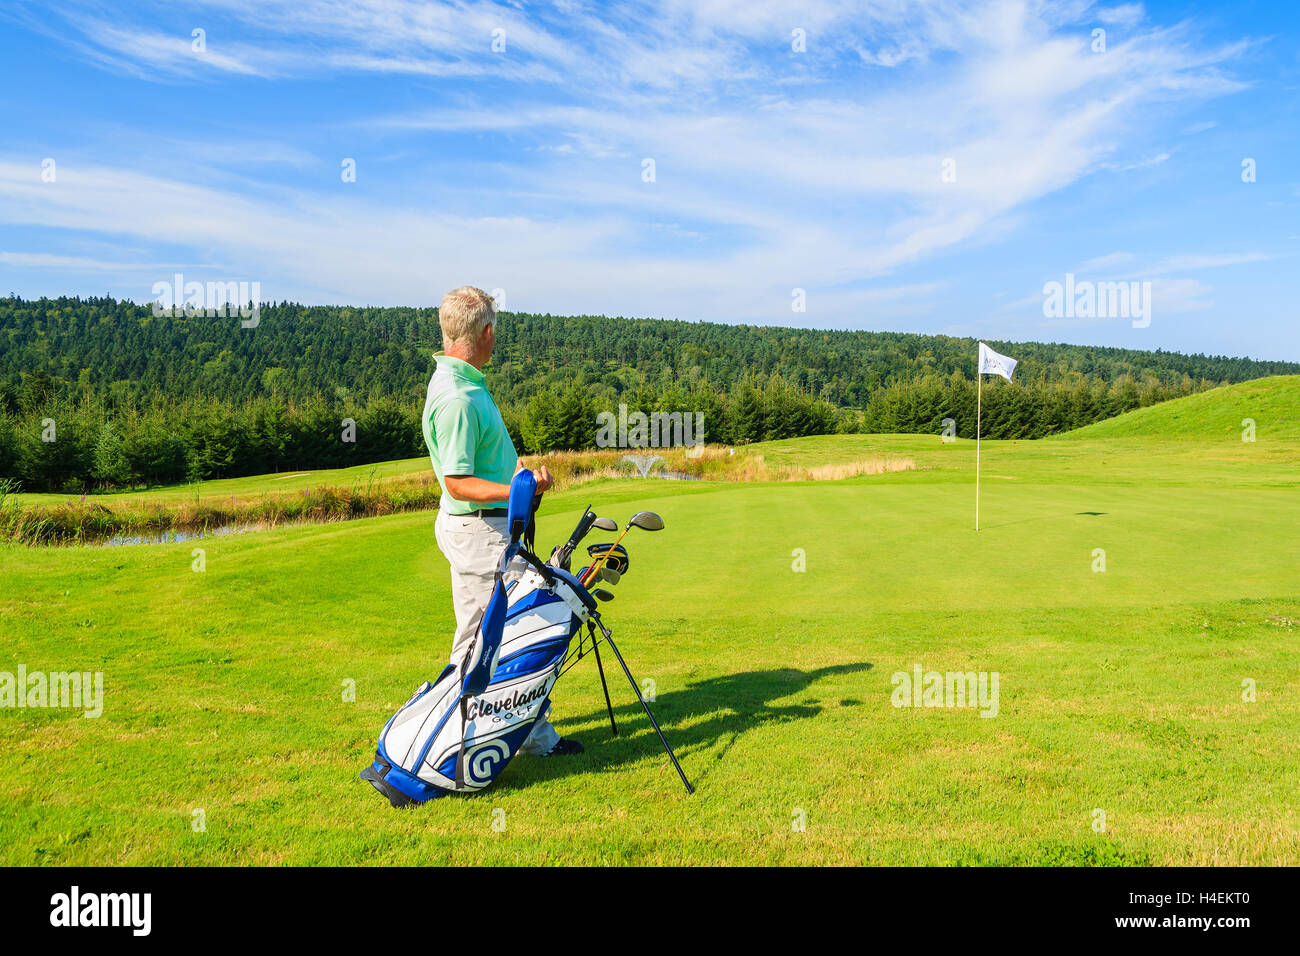 ARLAMOW GOLF COURSE, Polen - 3. August 2014: reifer Mann spielt Golf an sonnigen Sommertag in Arlamow Hotel. Das Luxushotel wurde Polens Regierung Besitz und befindet sich im Bieszczady-Gebirge. Stockfoto